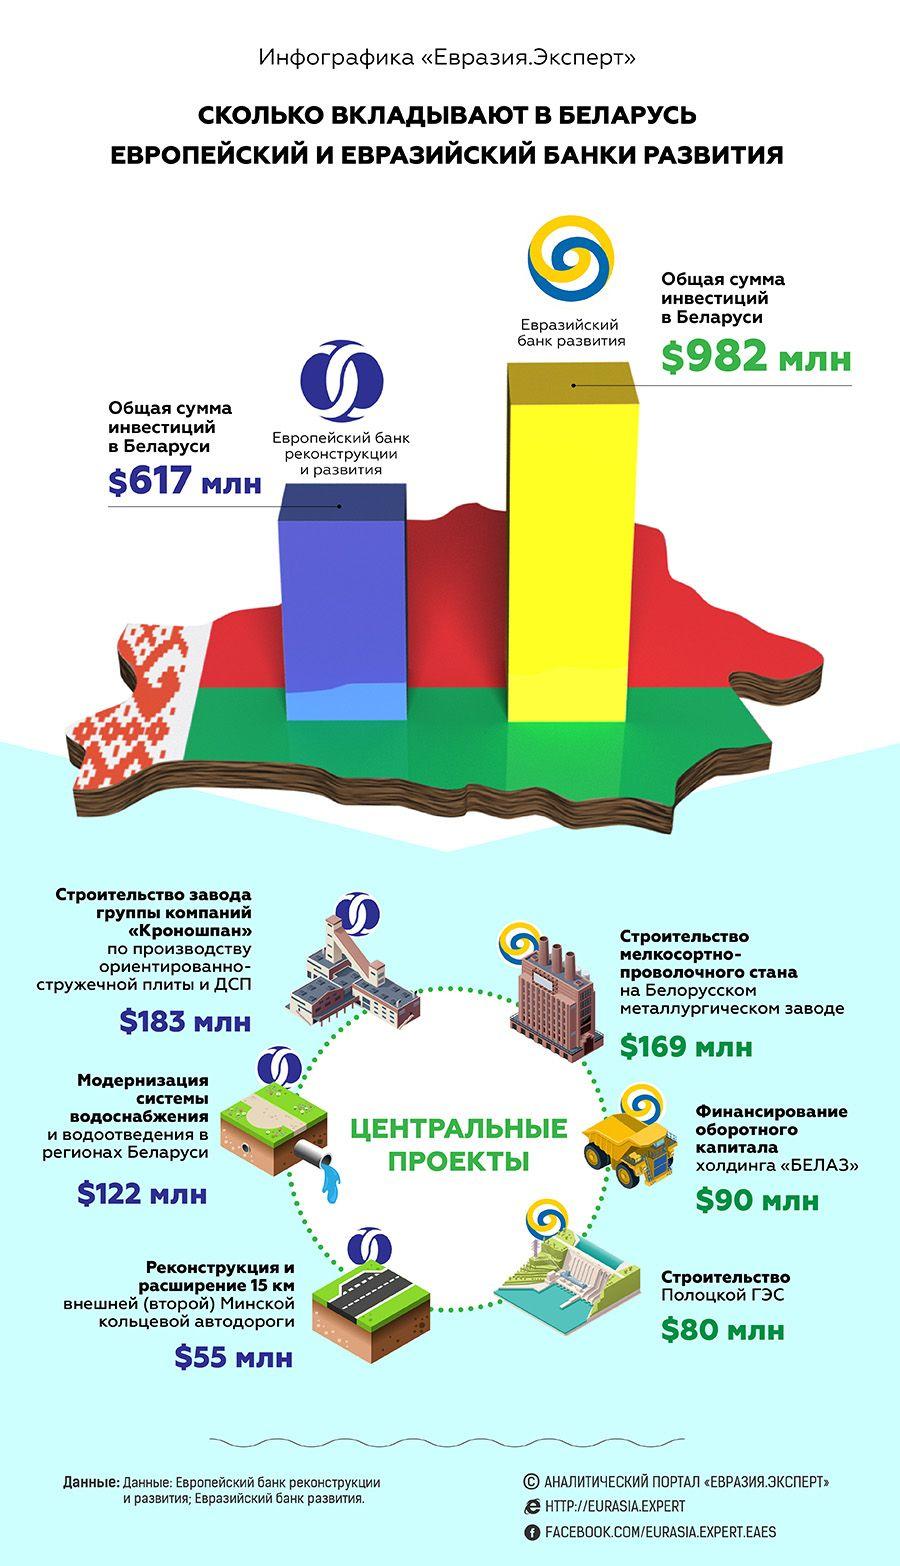 Инфографика: Сколько вкладывают в Беларусь Европейский и Евразийский банки развития